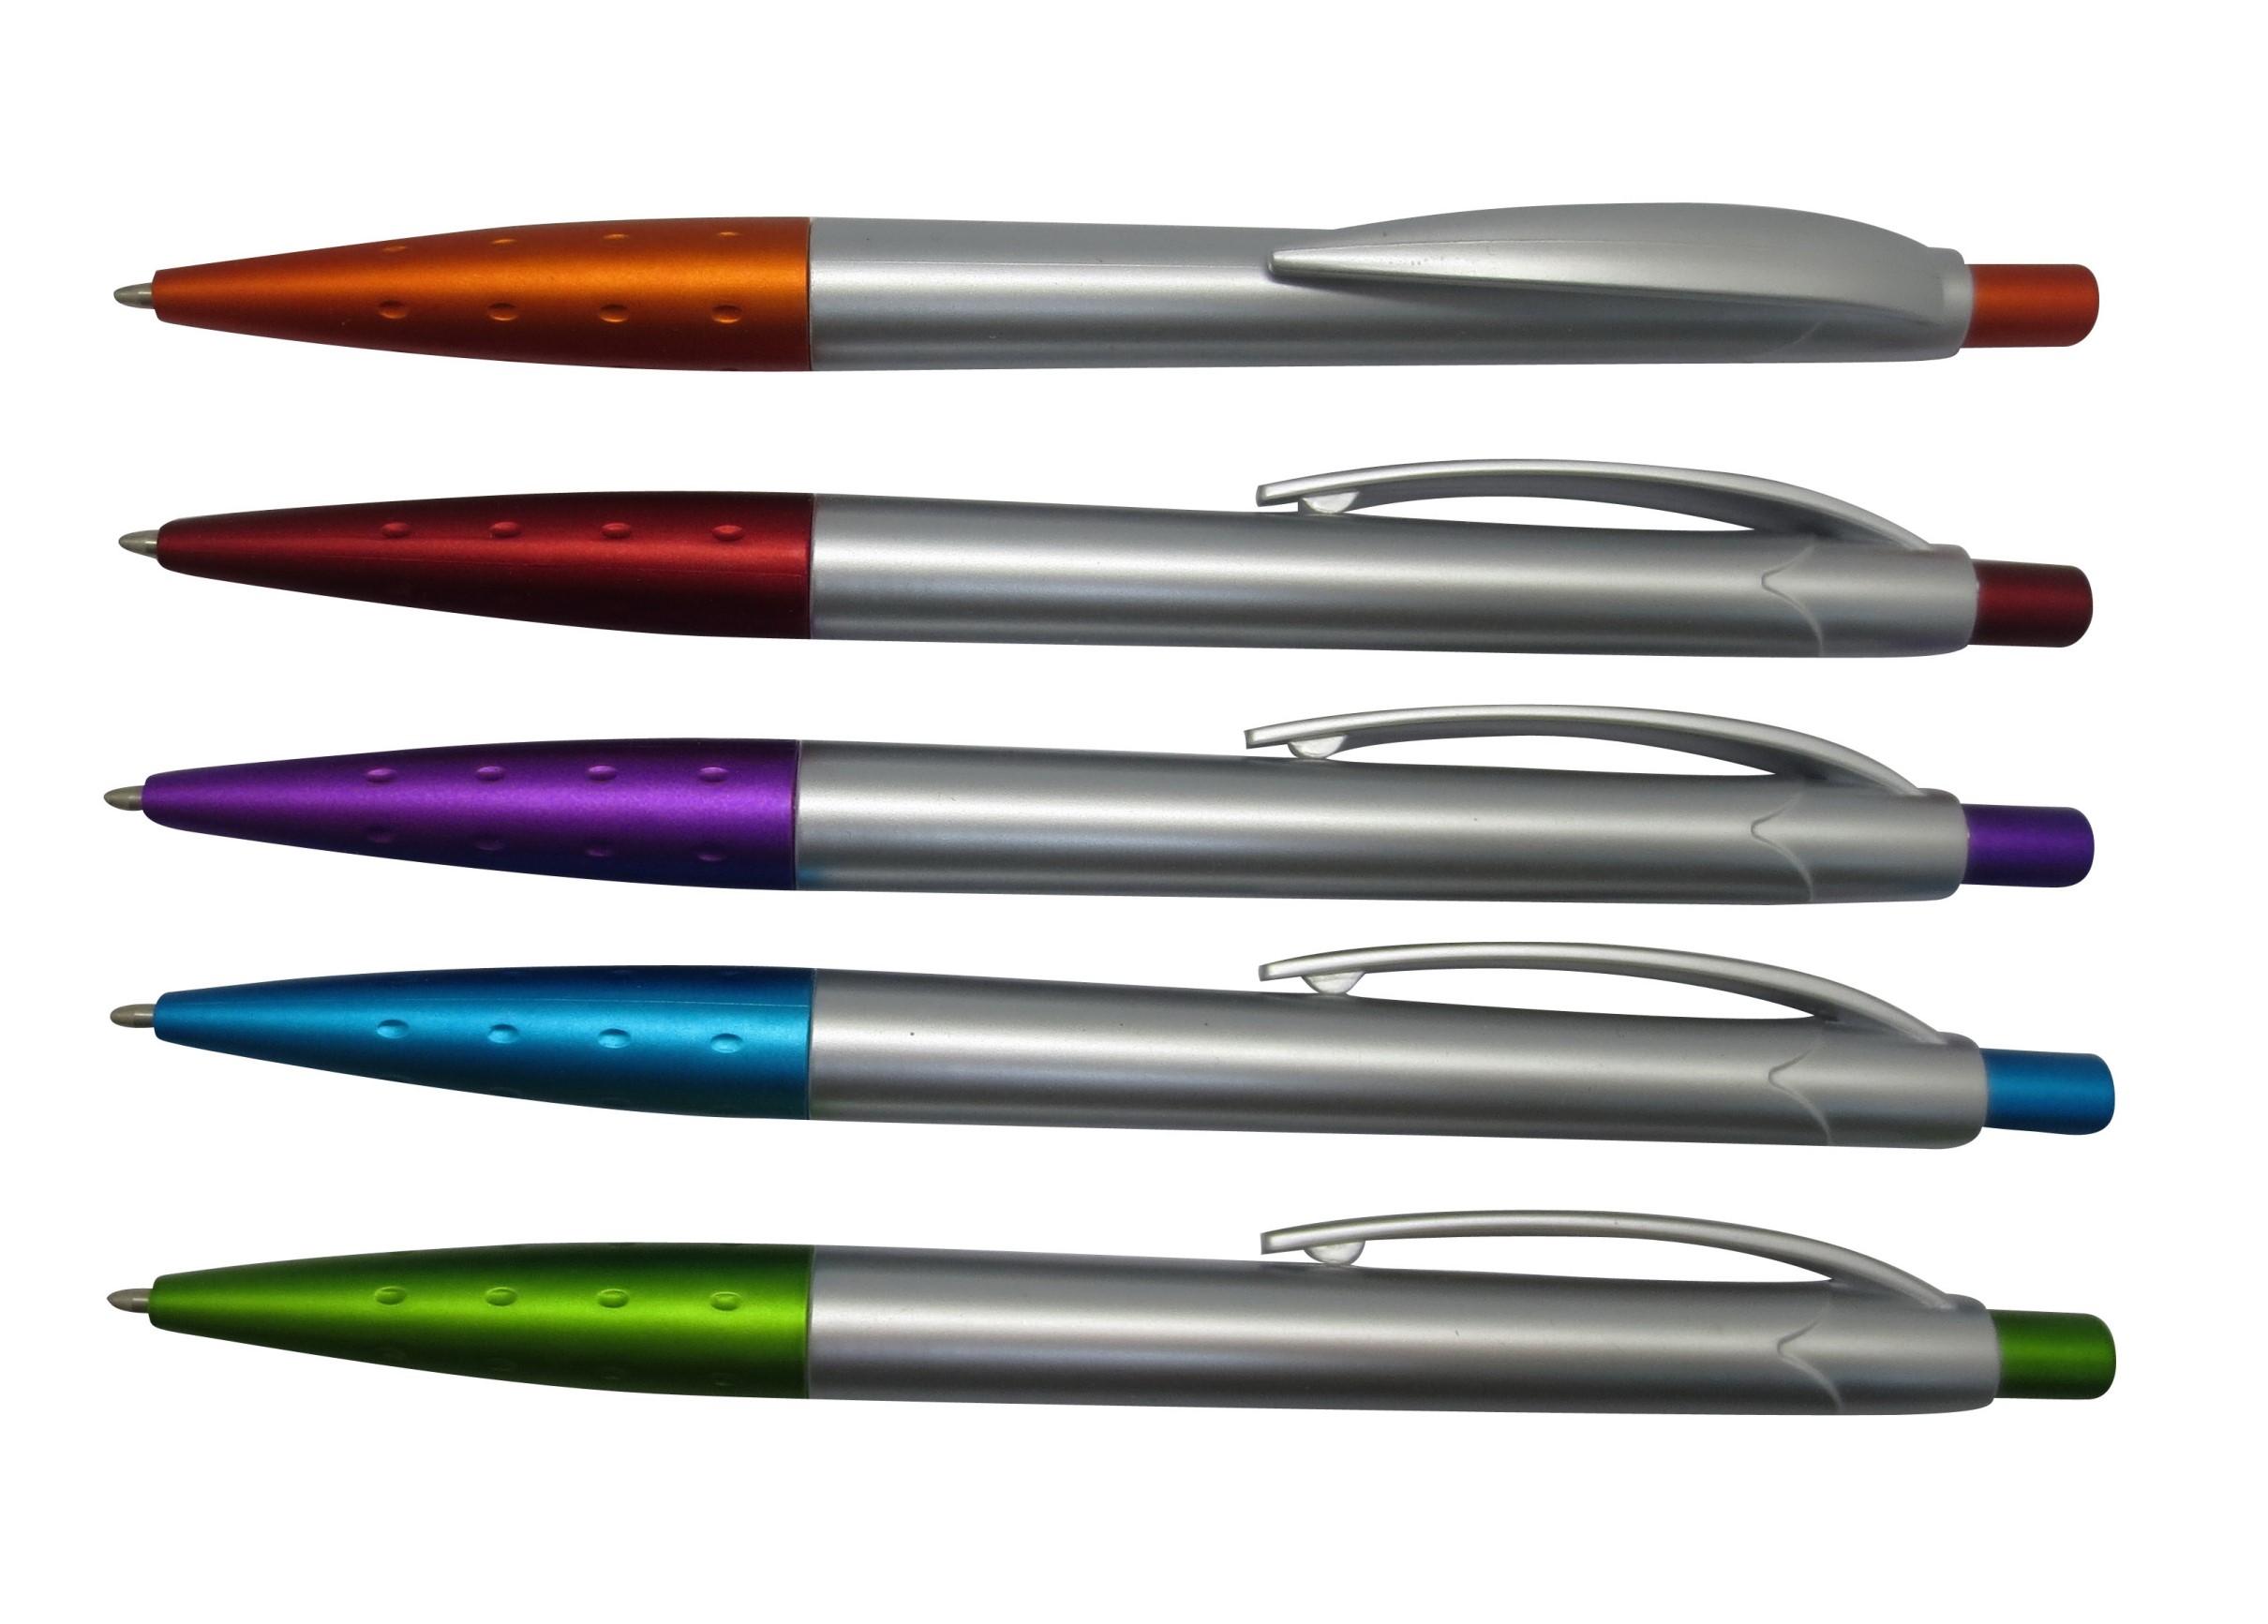 รับผลิตและจำหน่าย ปากกกาพลาสติก plastic pensราคาพิเศษ สกรีนโลโก้ฟรี !! รูปที่ 1